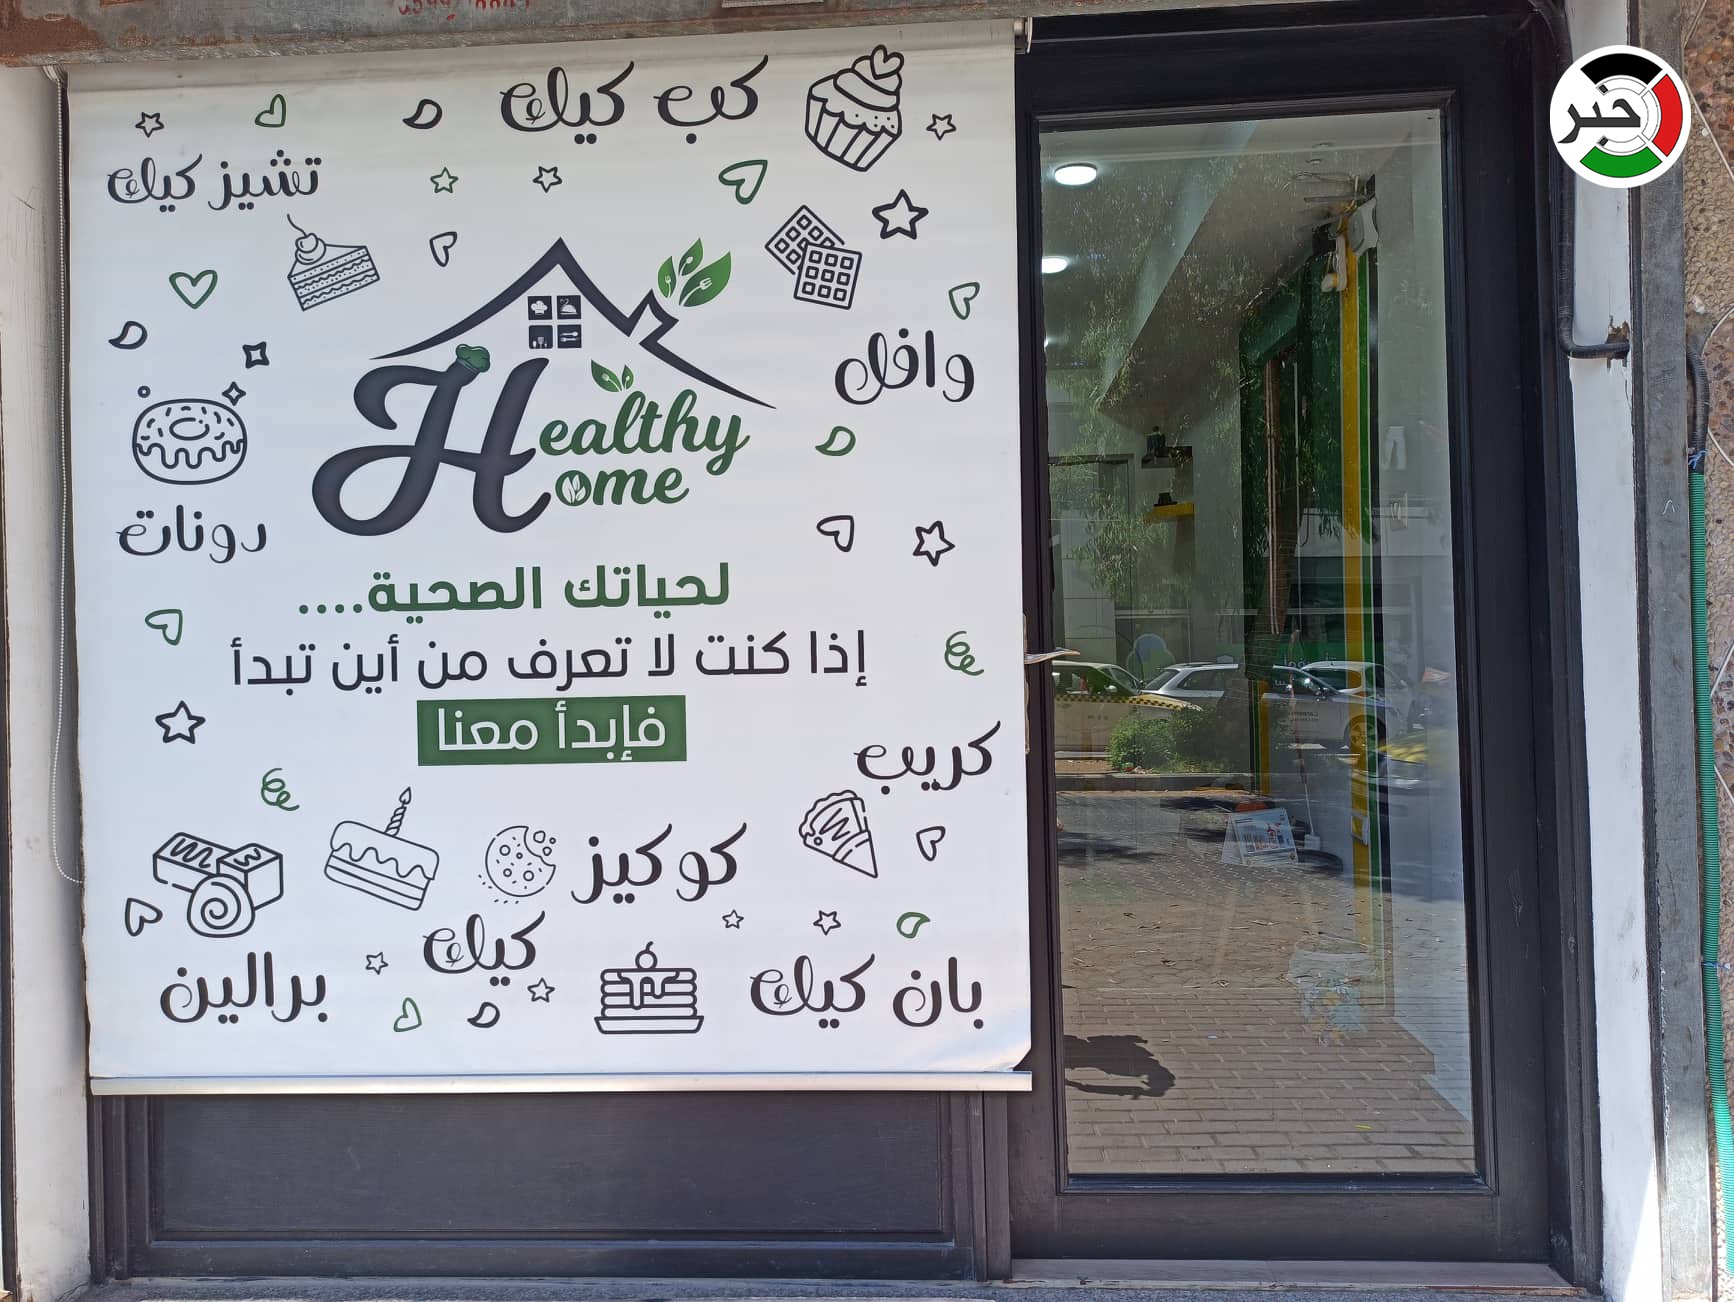 شاهد: "البيت الصحي".. أول متجر في غزّة مختص بصناعة كعك العيد والحلويات لمرضى السكر